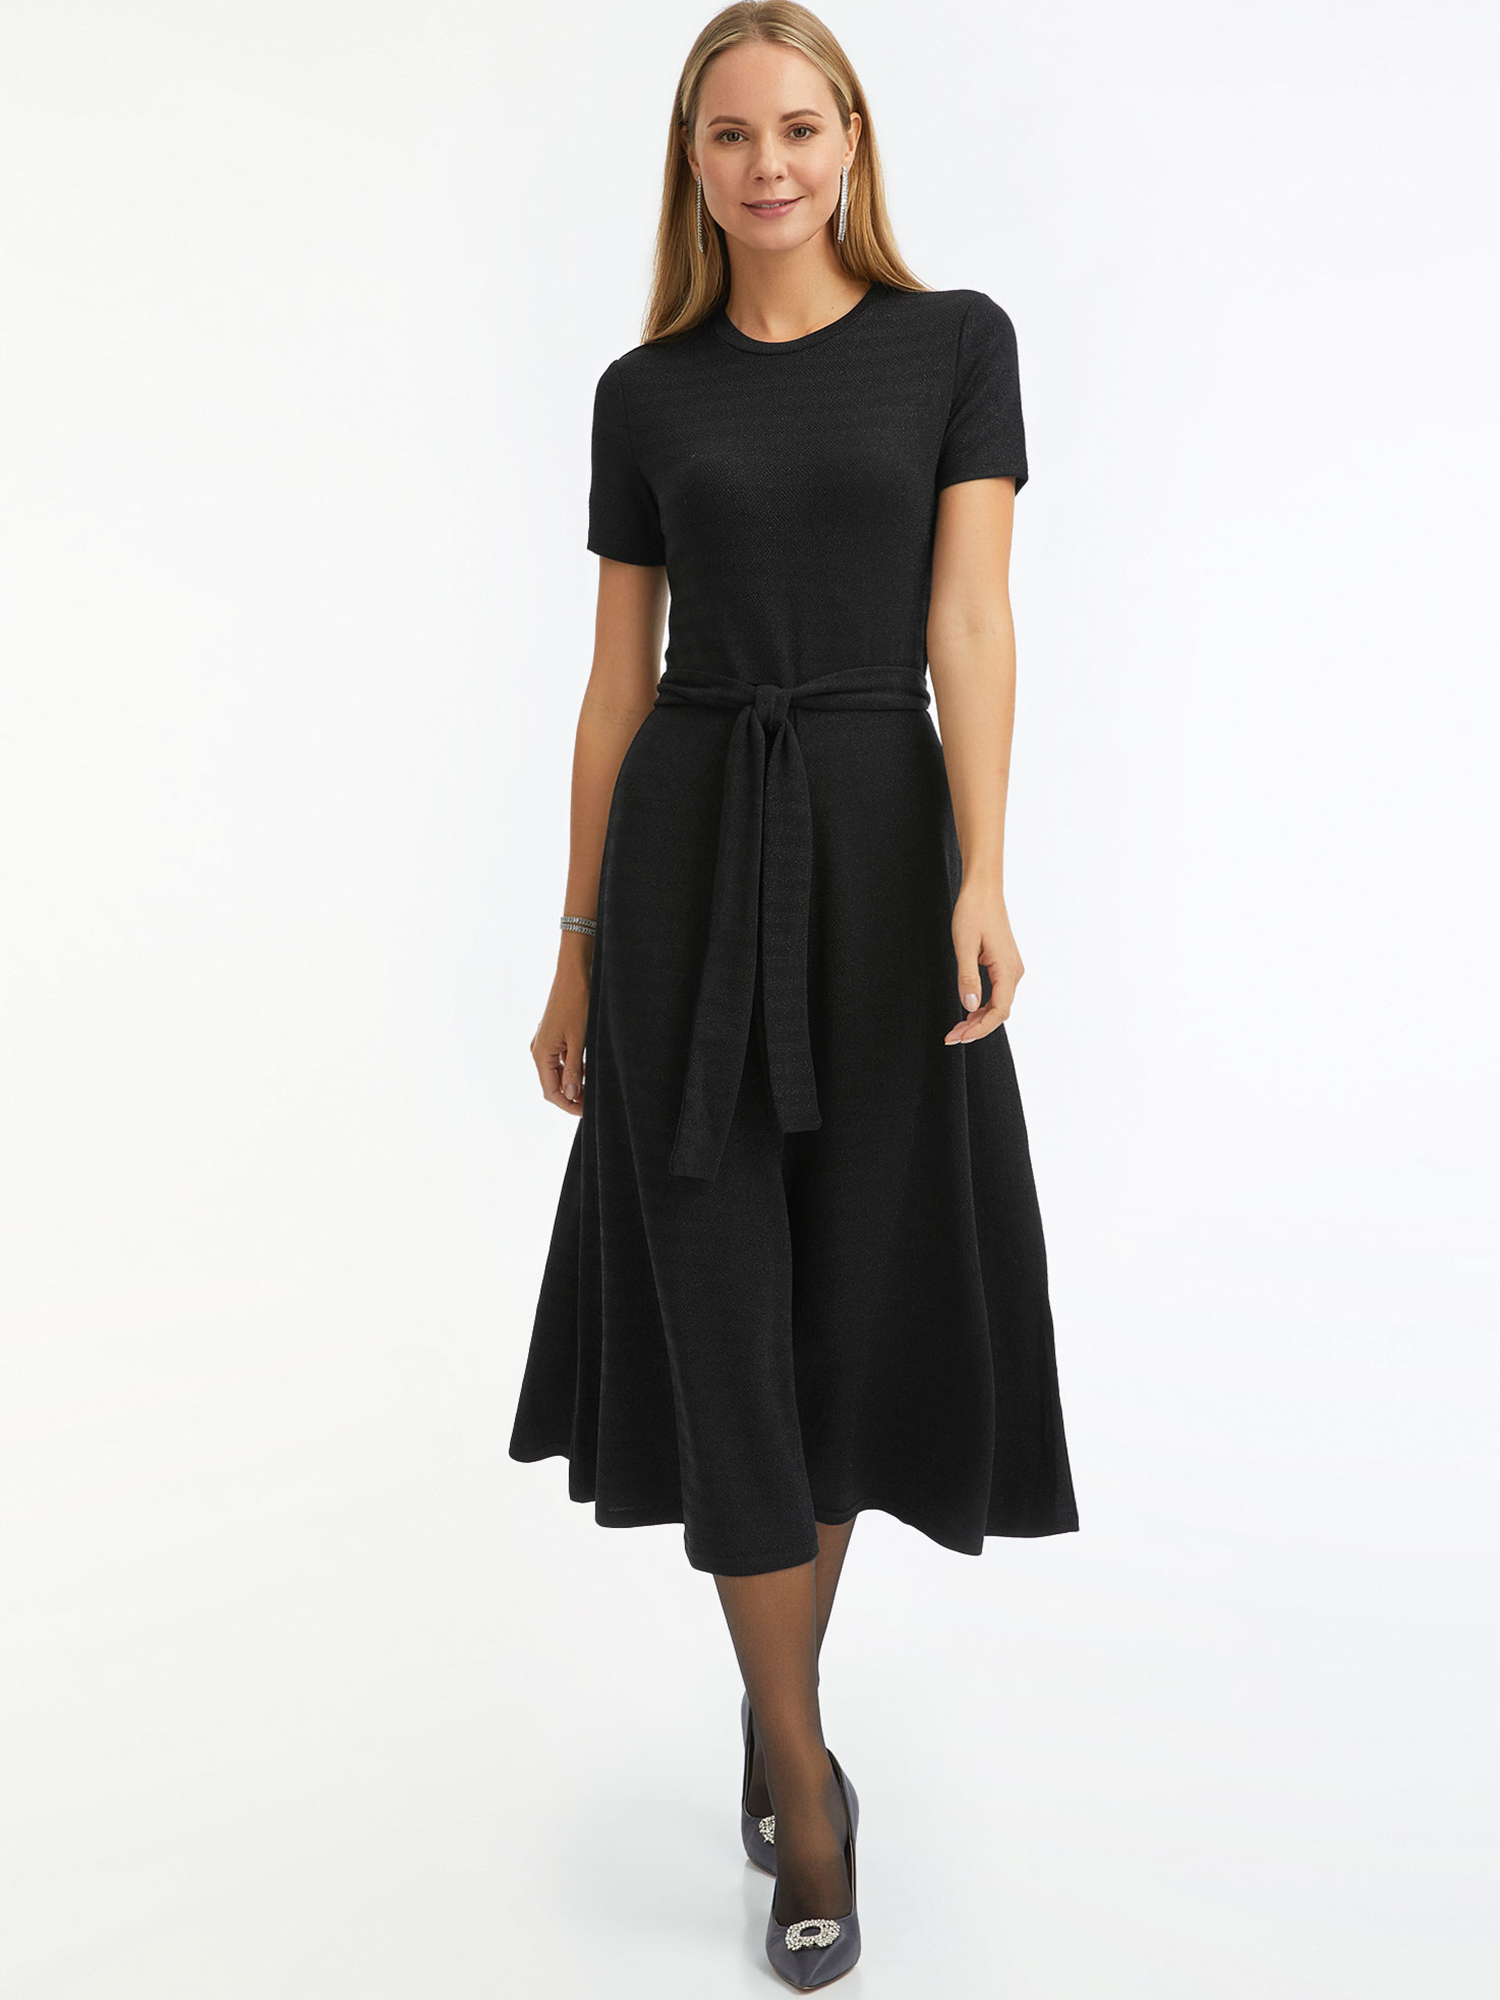 Платье женское oodji 14011090-2 черное S